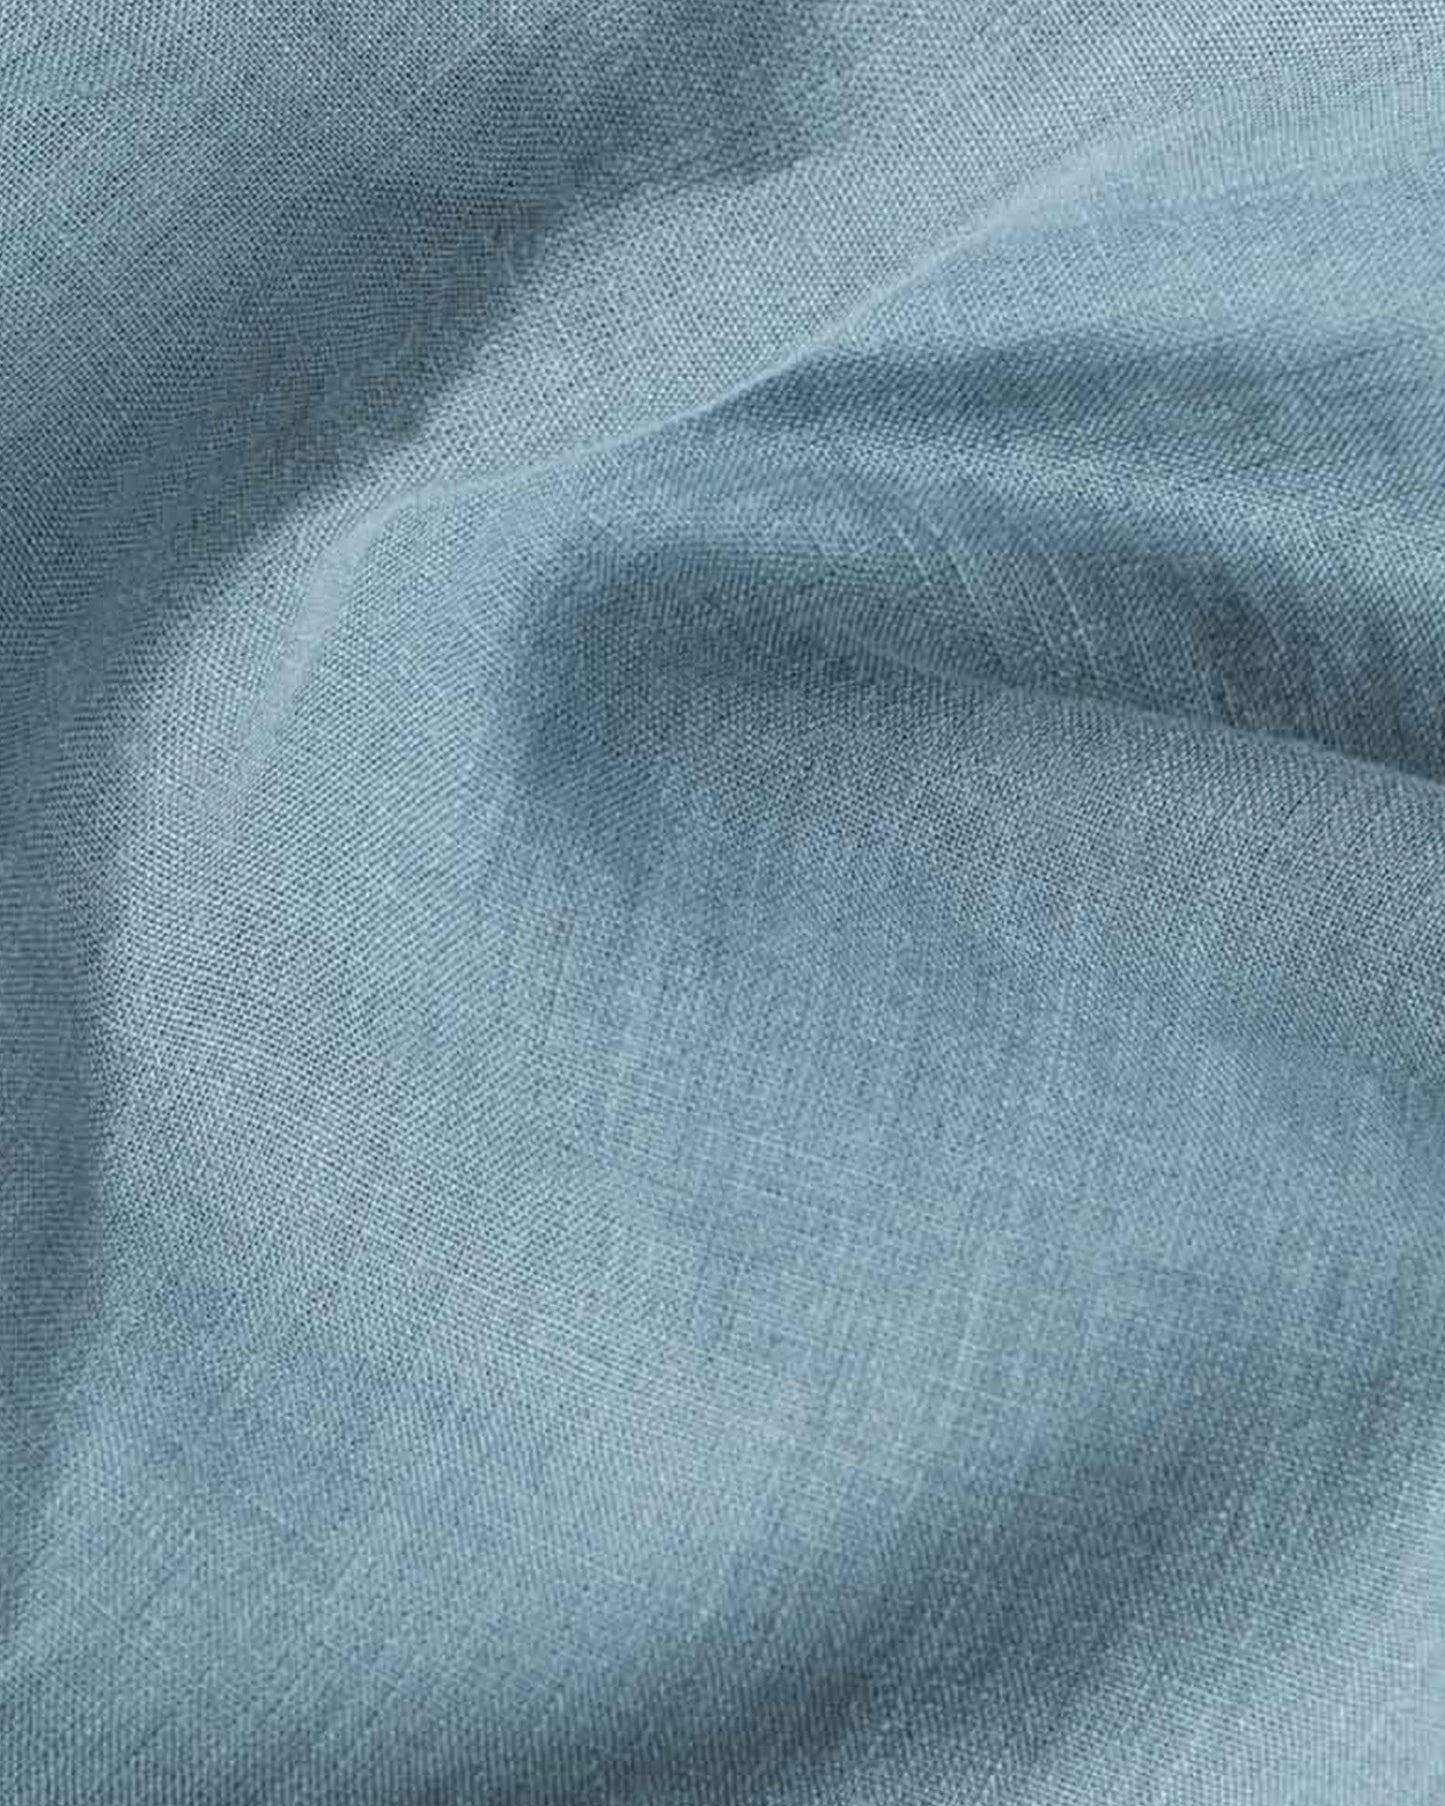 Gray blue linen sheet set (4 pcs) - MagicLinen